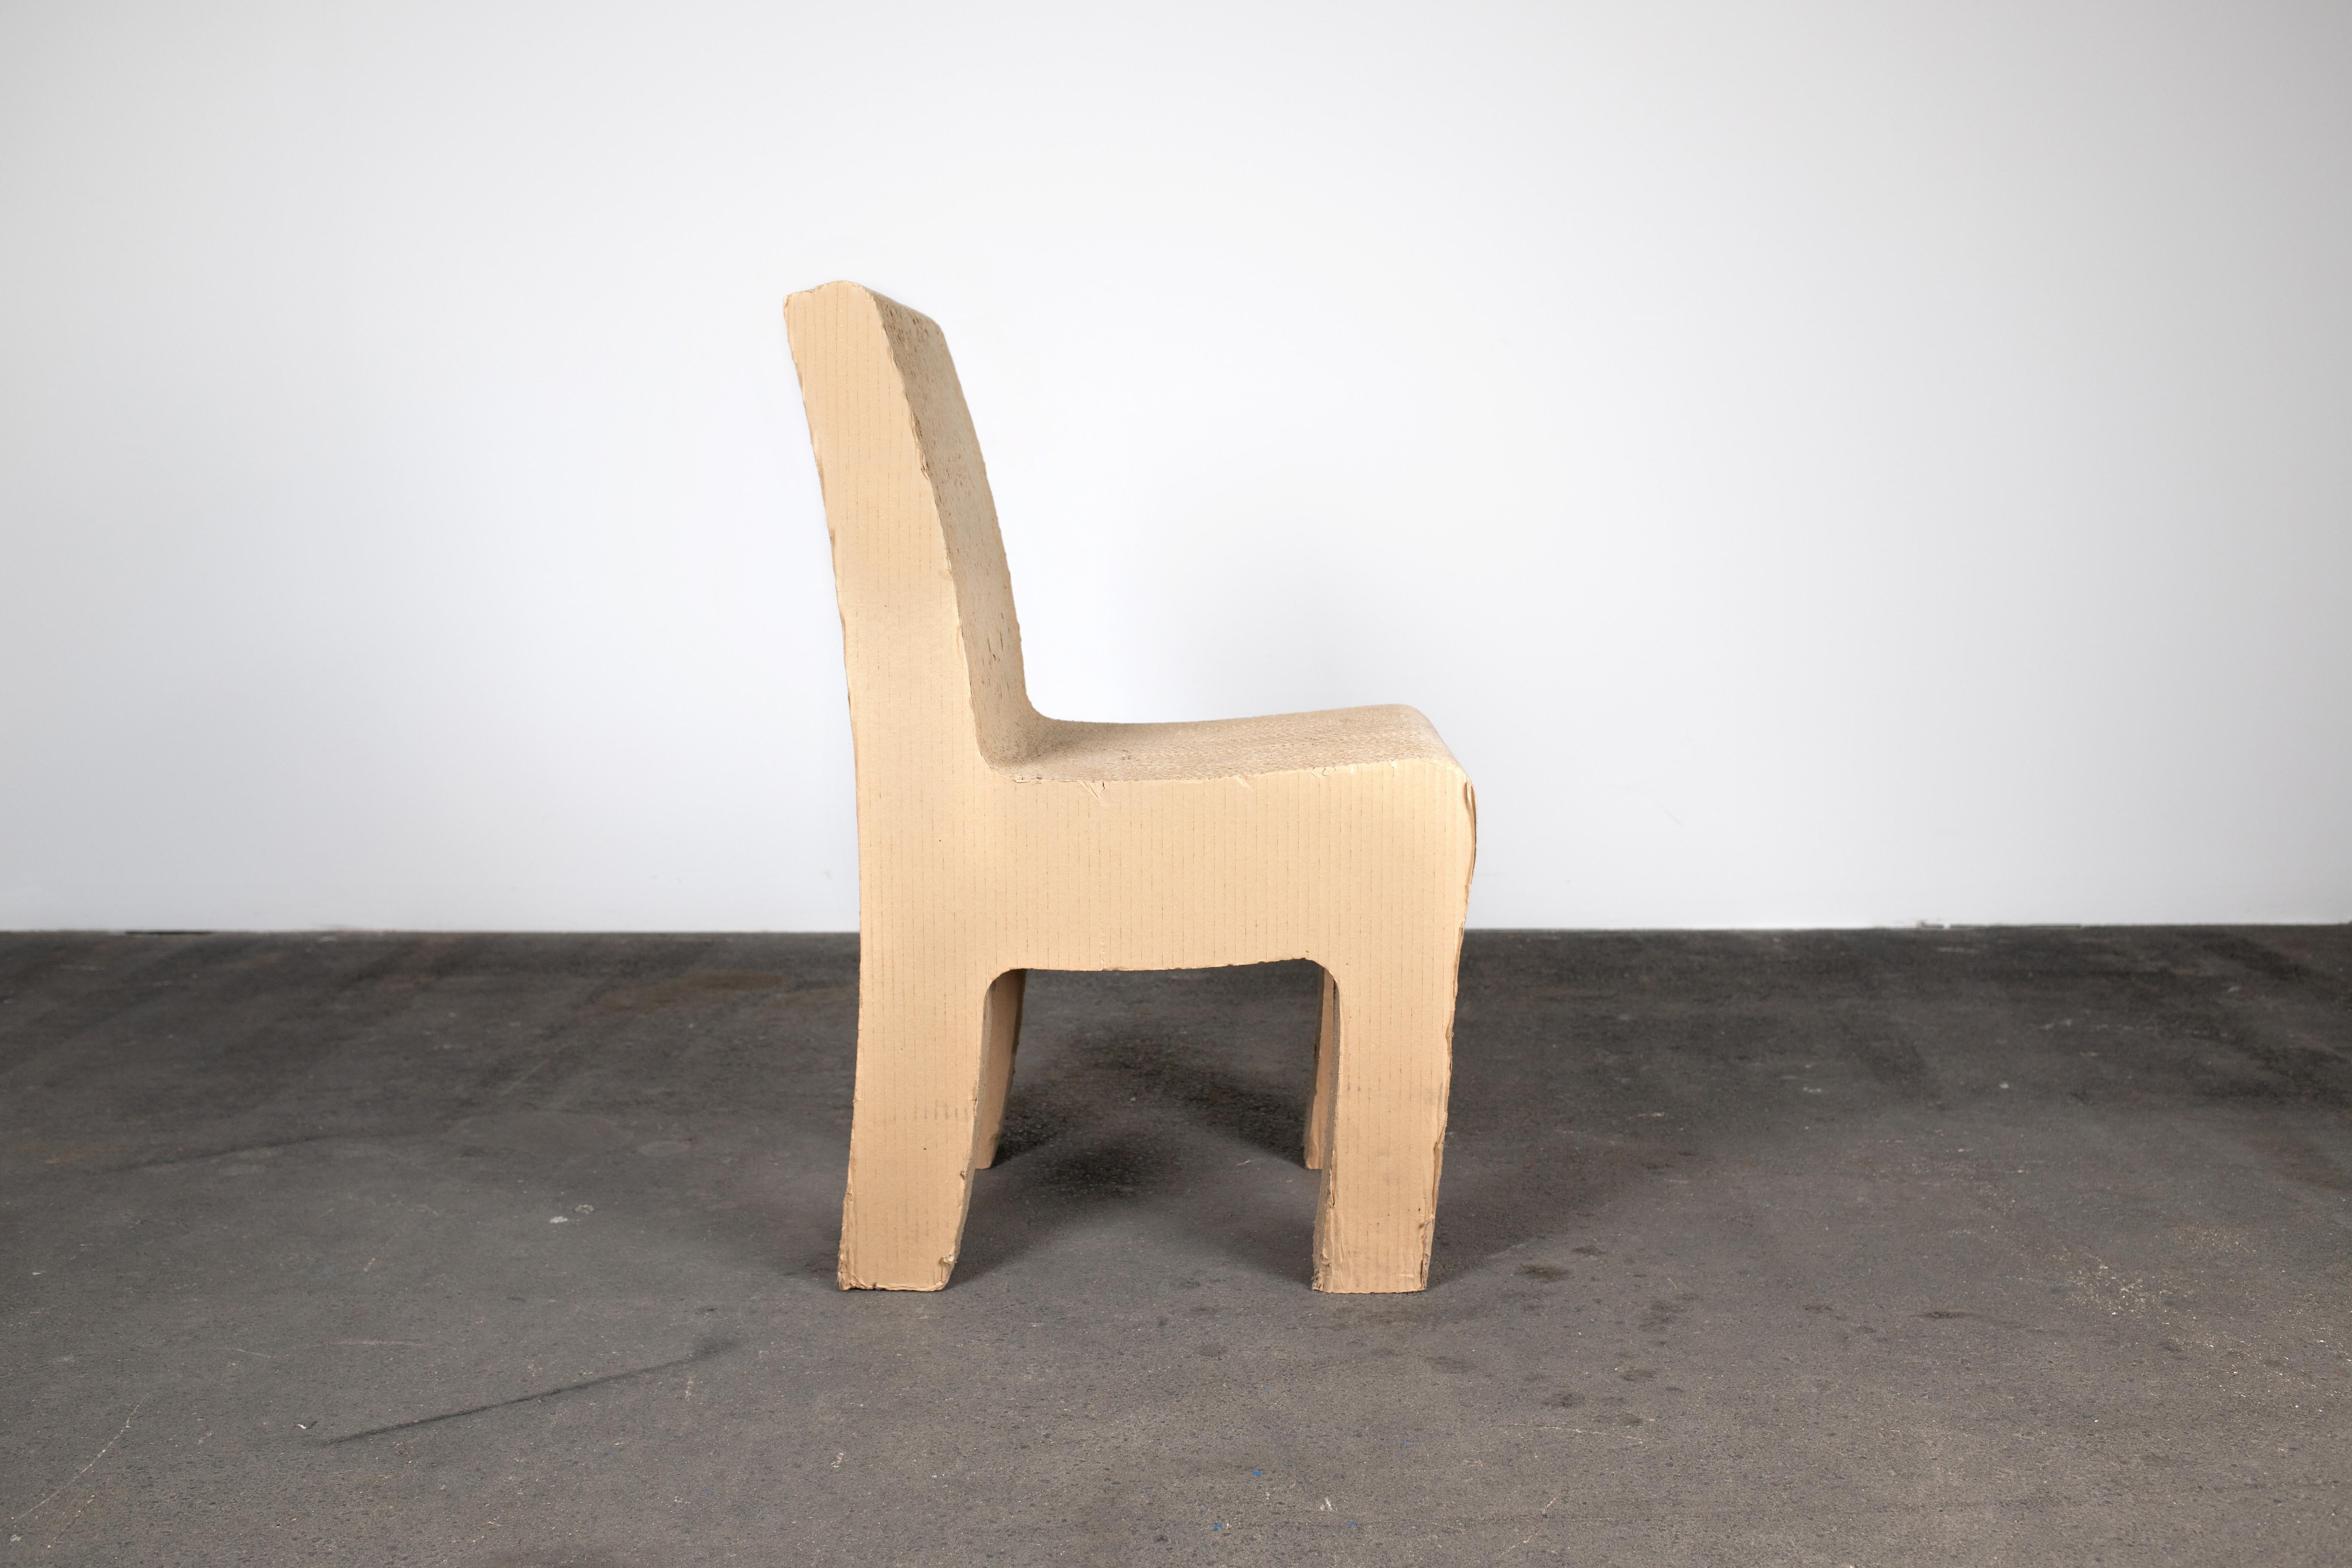 Postmoderner skurriler skulpturaler Stuhl aus braunem Karton aus Deutschland in den 1980er Jahren, der an Frank Gehry erinnert. Der Stuhl ist erstaunlich ergonomisch und bequem. Es bringt spielerisches Flair und Unterhaltung in Ihren Raum.

Zustand